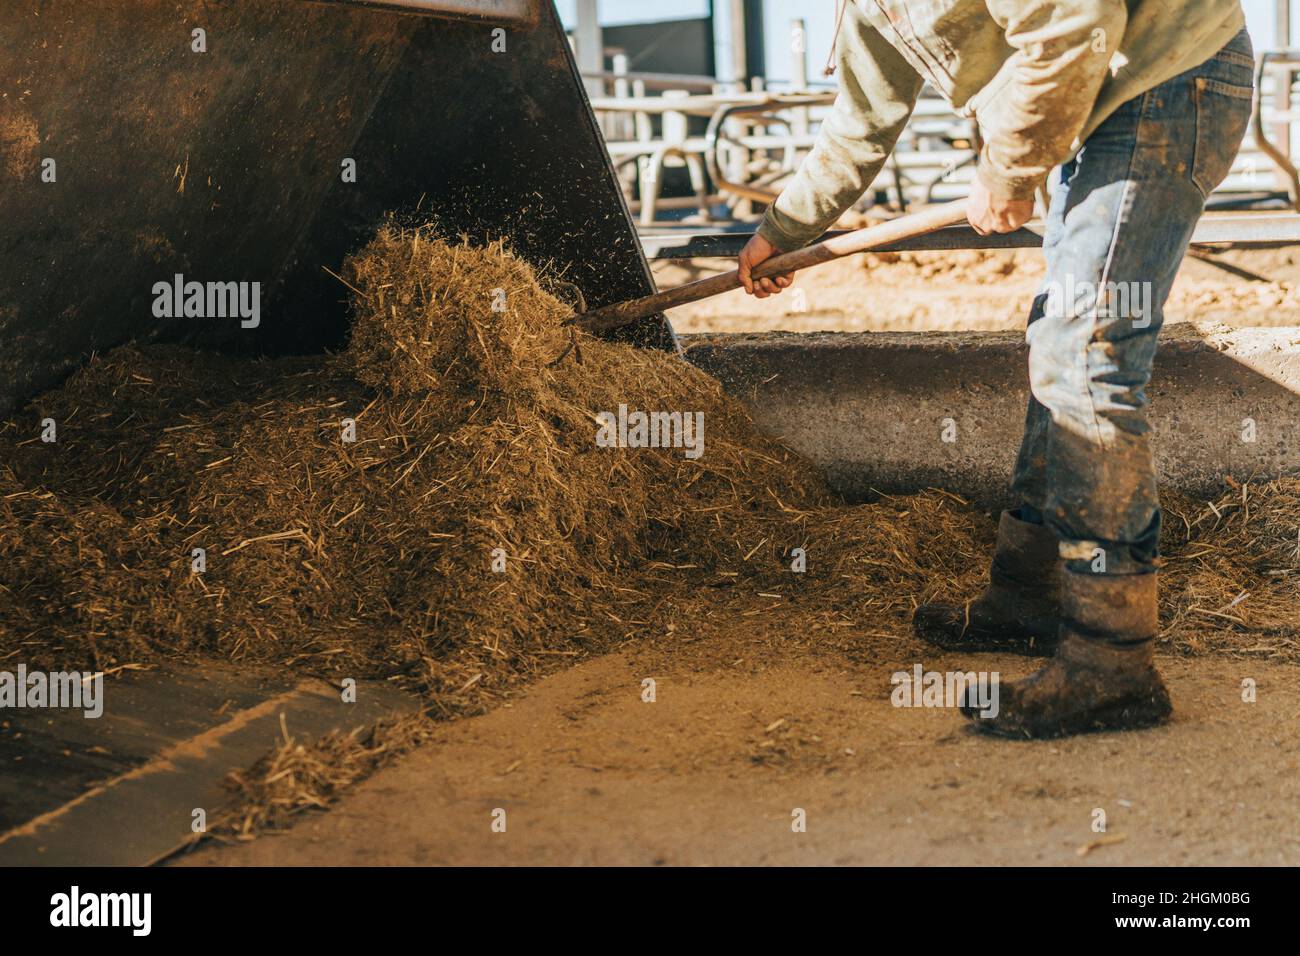 le travailleur utilise la fourche pour répartir le foin déposé sur la pelle d'un tracteur. Banque D'Images